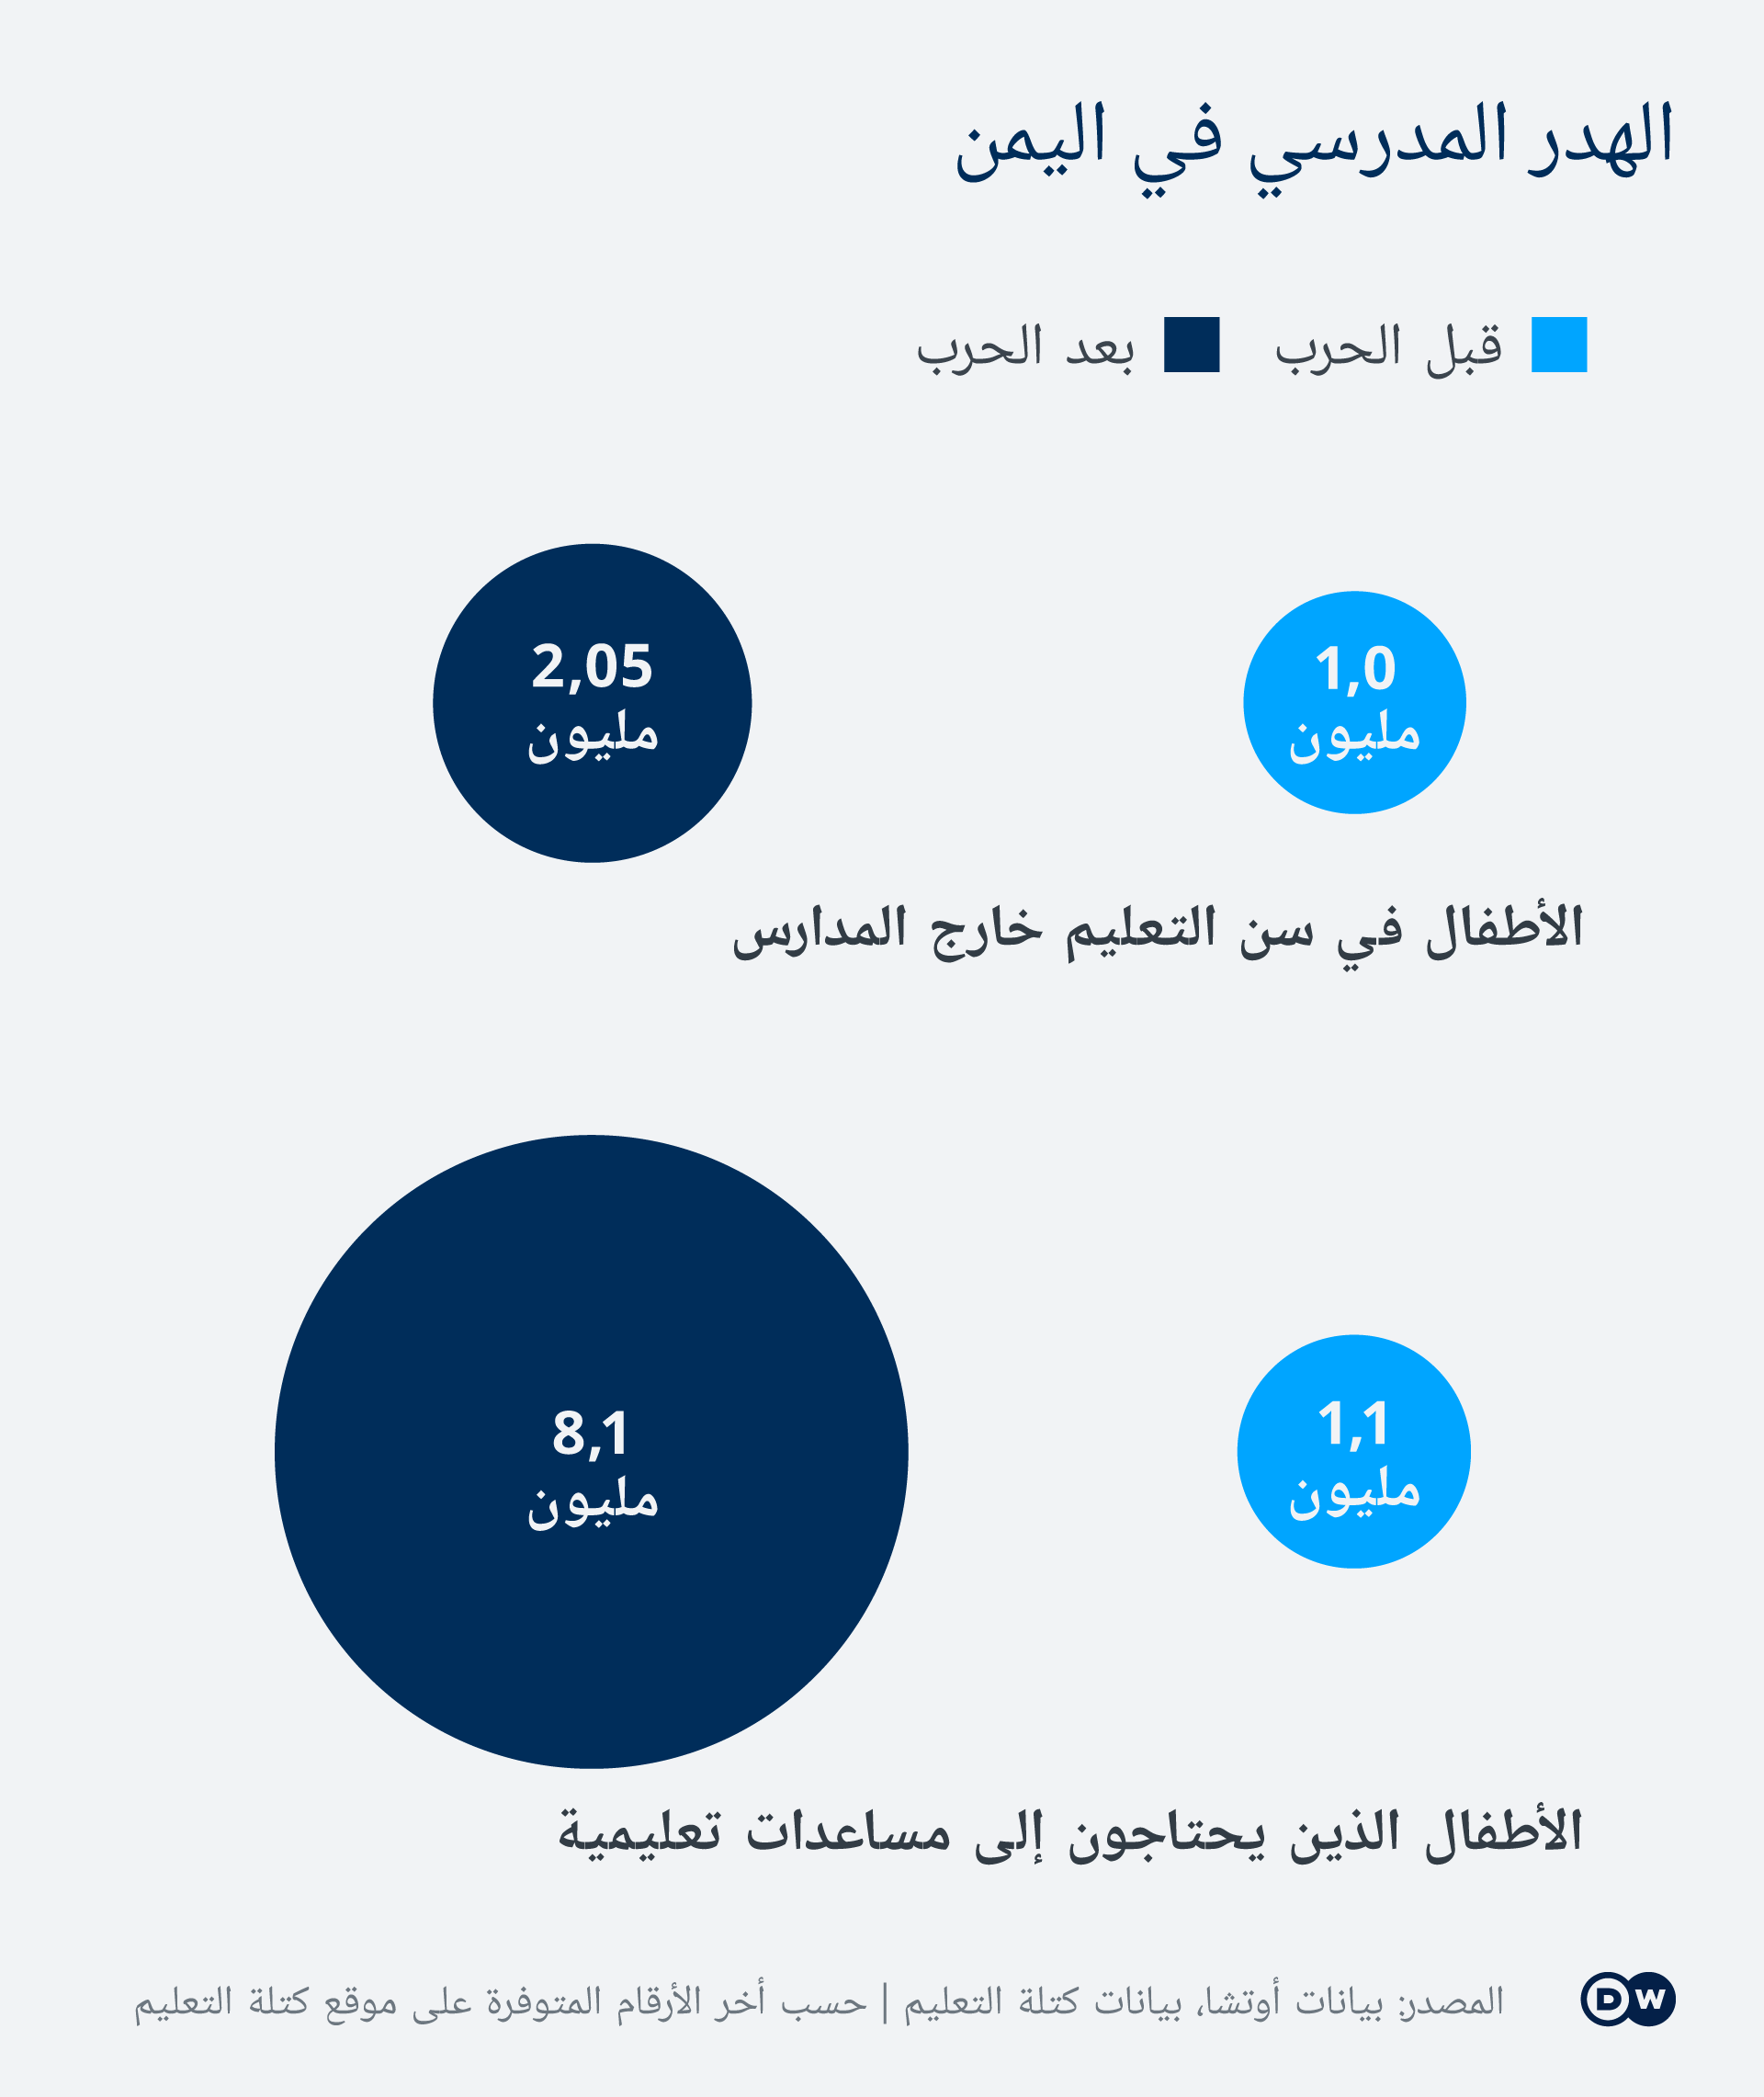 في اليمن - الأطفال في سن التعليم خارج المدرسة والأطفال الذين في حاجة إلى مساعدة. Infografik DW _ Bildung Schule Jemen Kinder nicht in der Schule